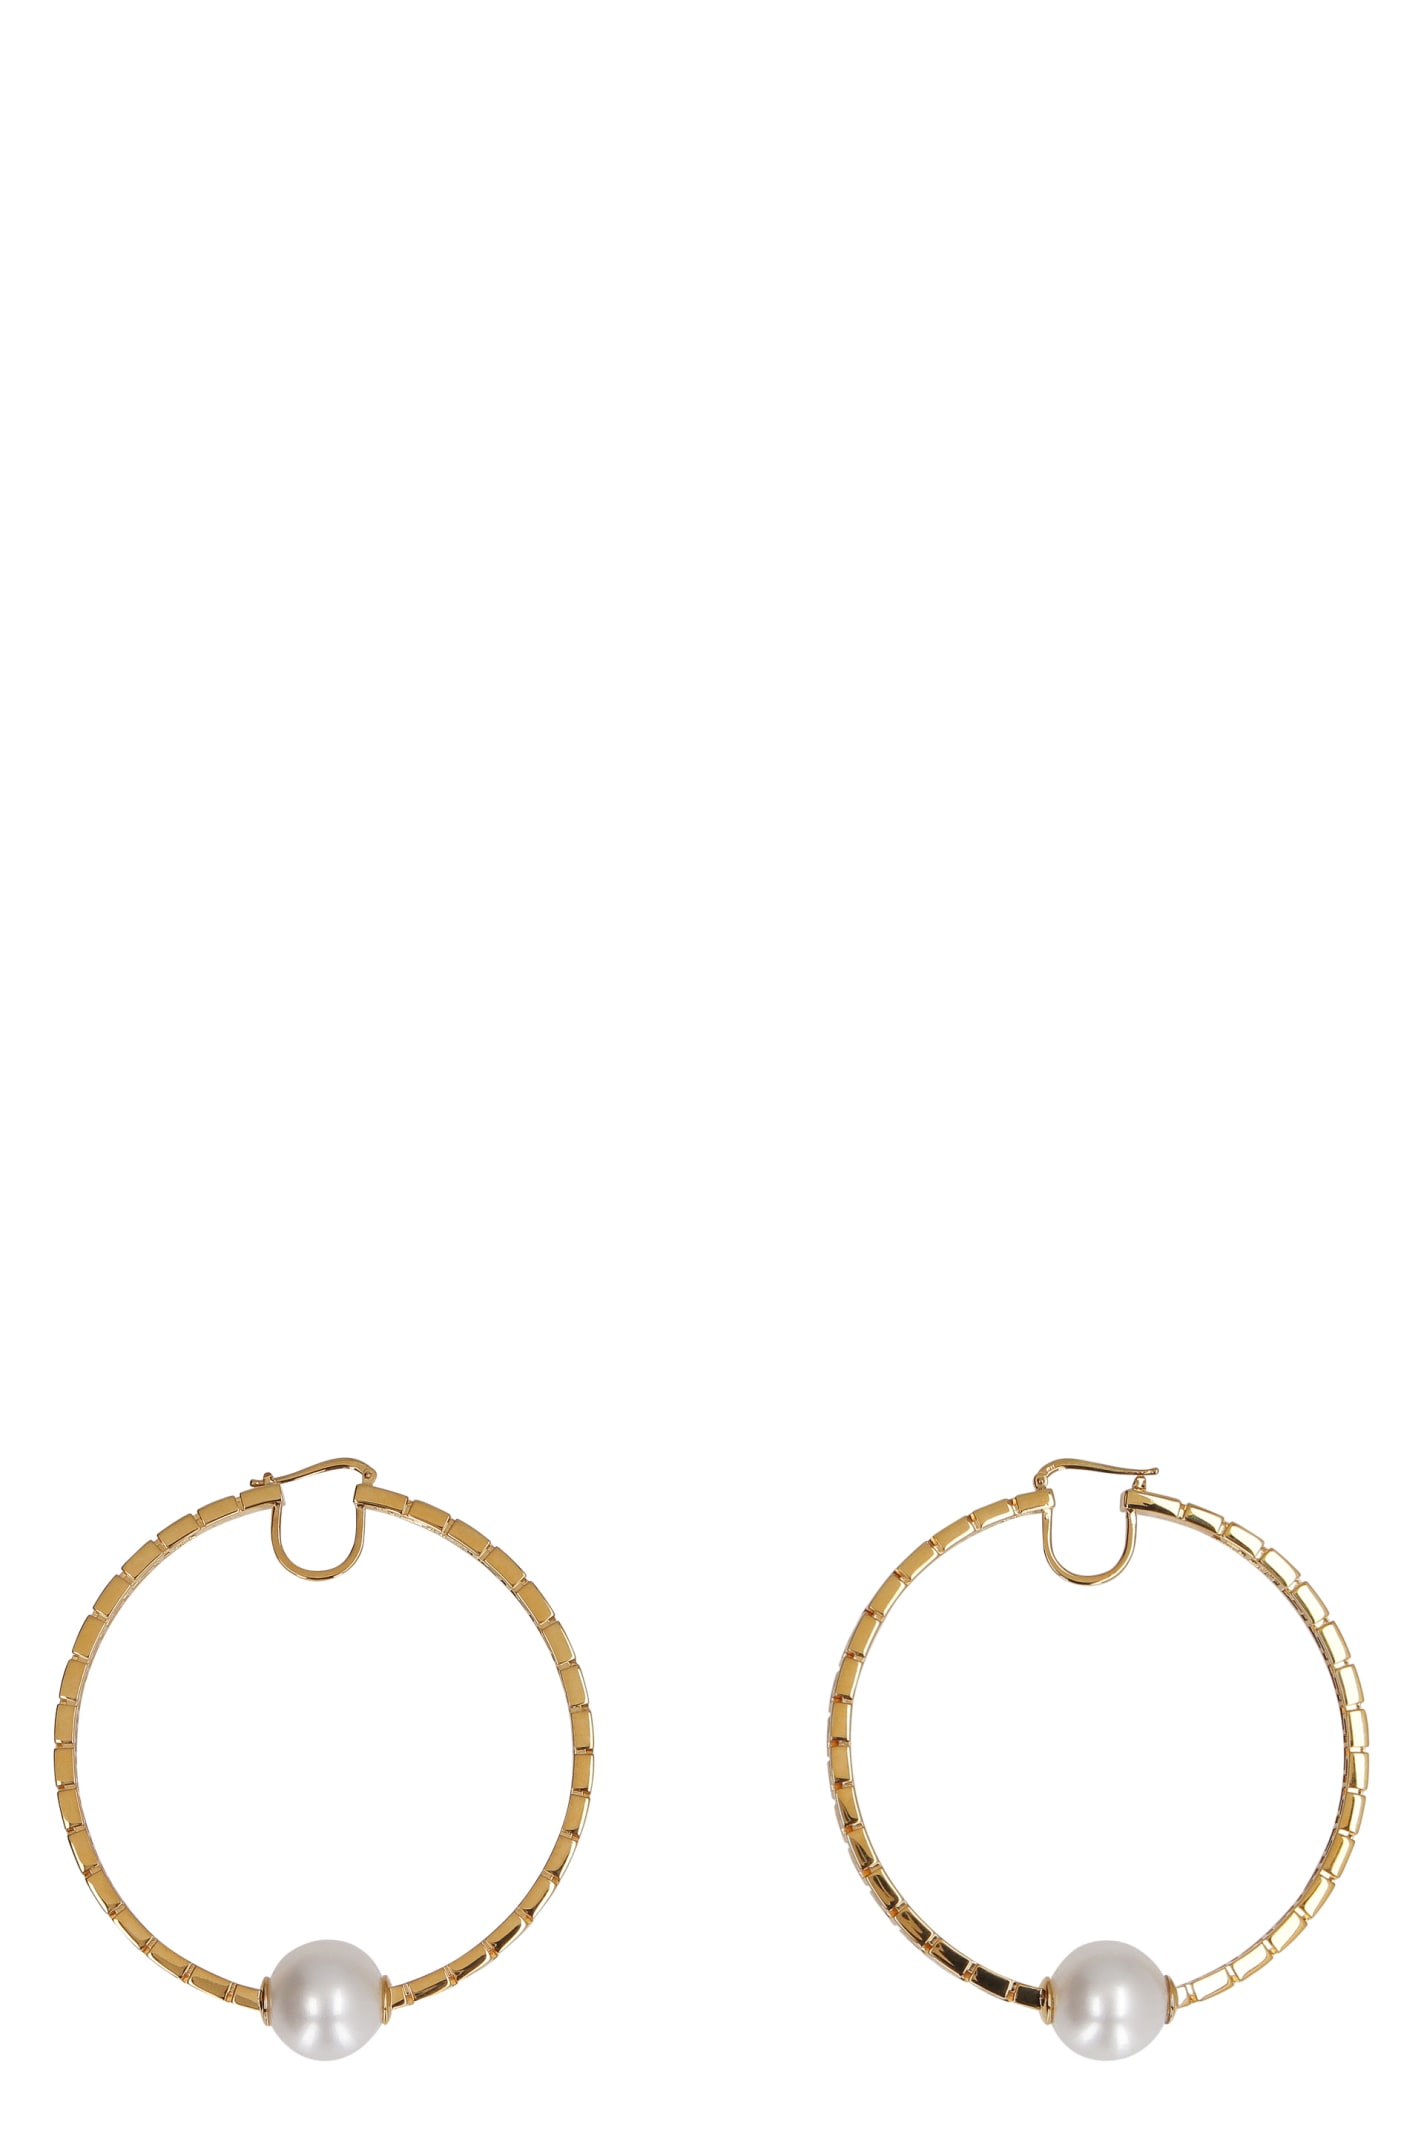 Versace Greca Hoop Earrings With Pearls